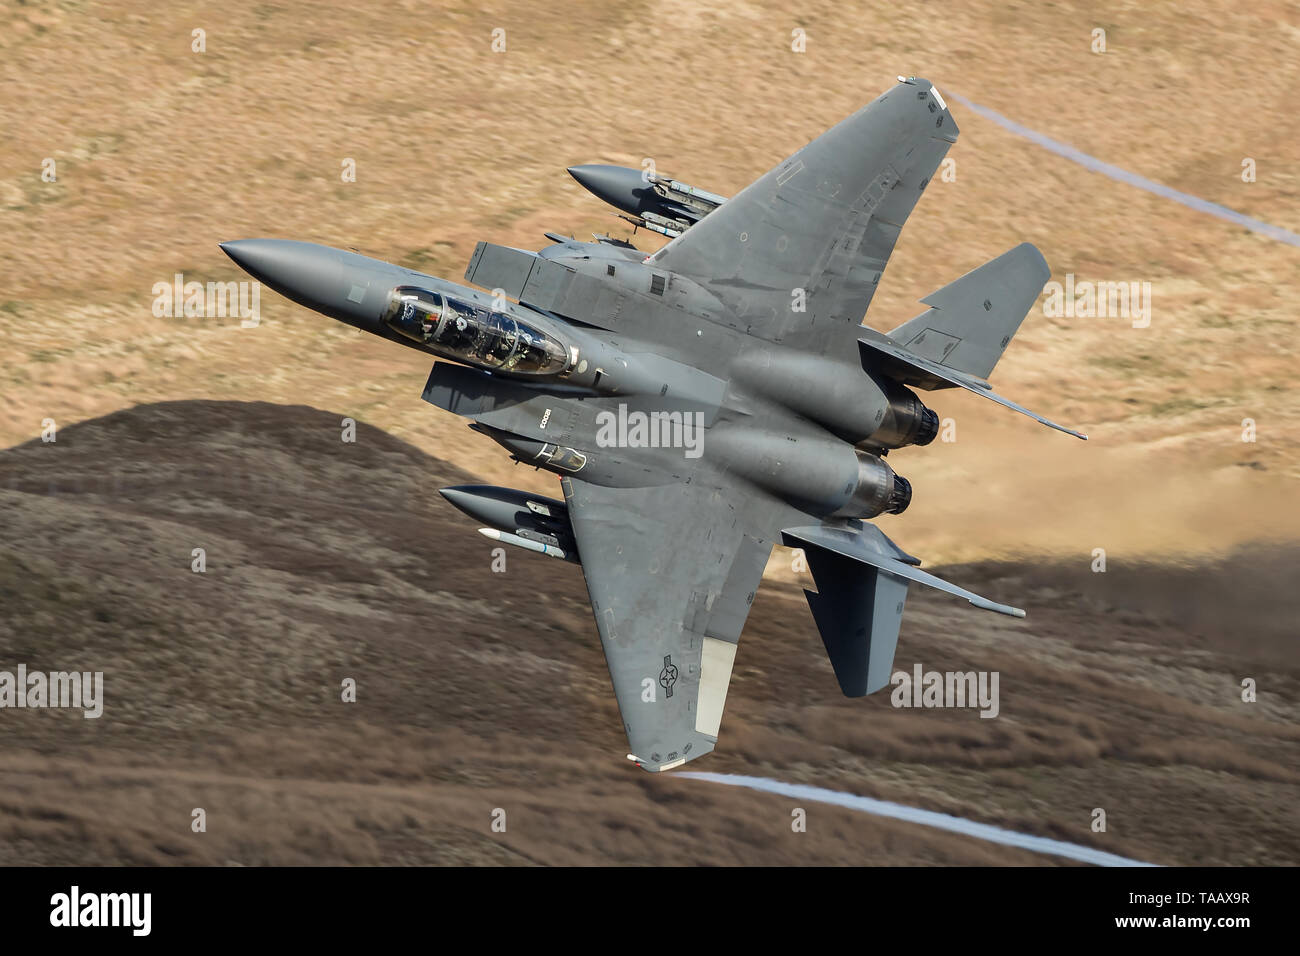 Un F-15E Strike Eagle quitte le Bwlch Exit dans la boucle de Mach au Pays de Galles, Royaume-Uni Banque D'Images